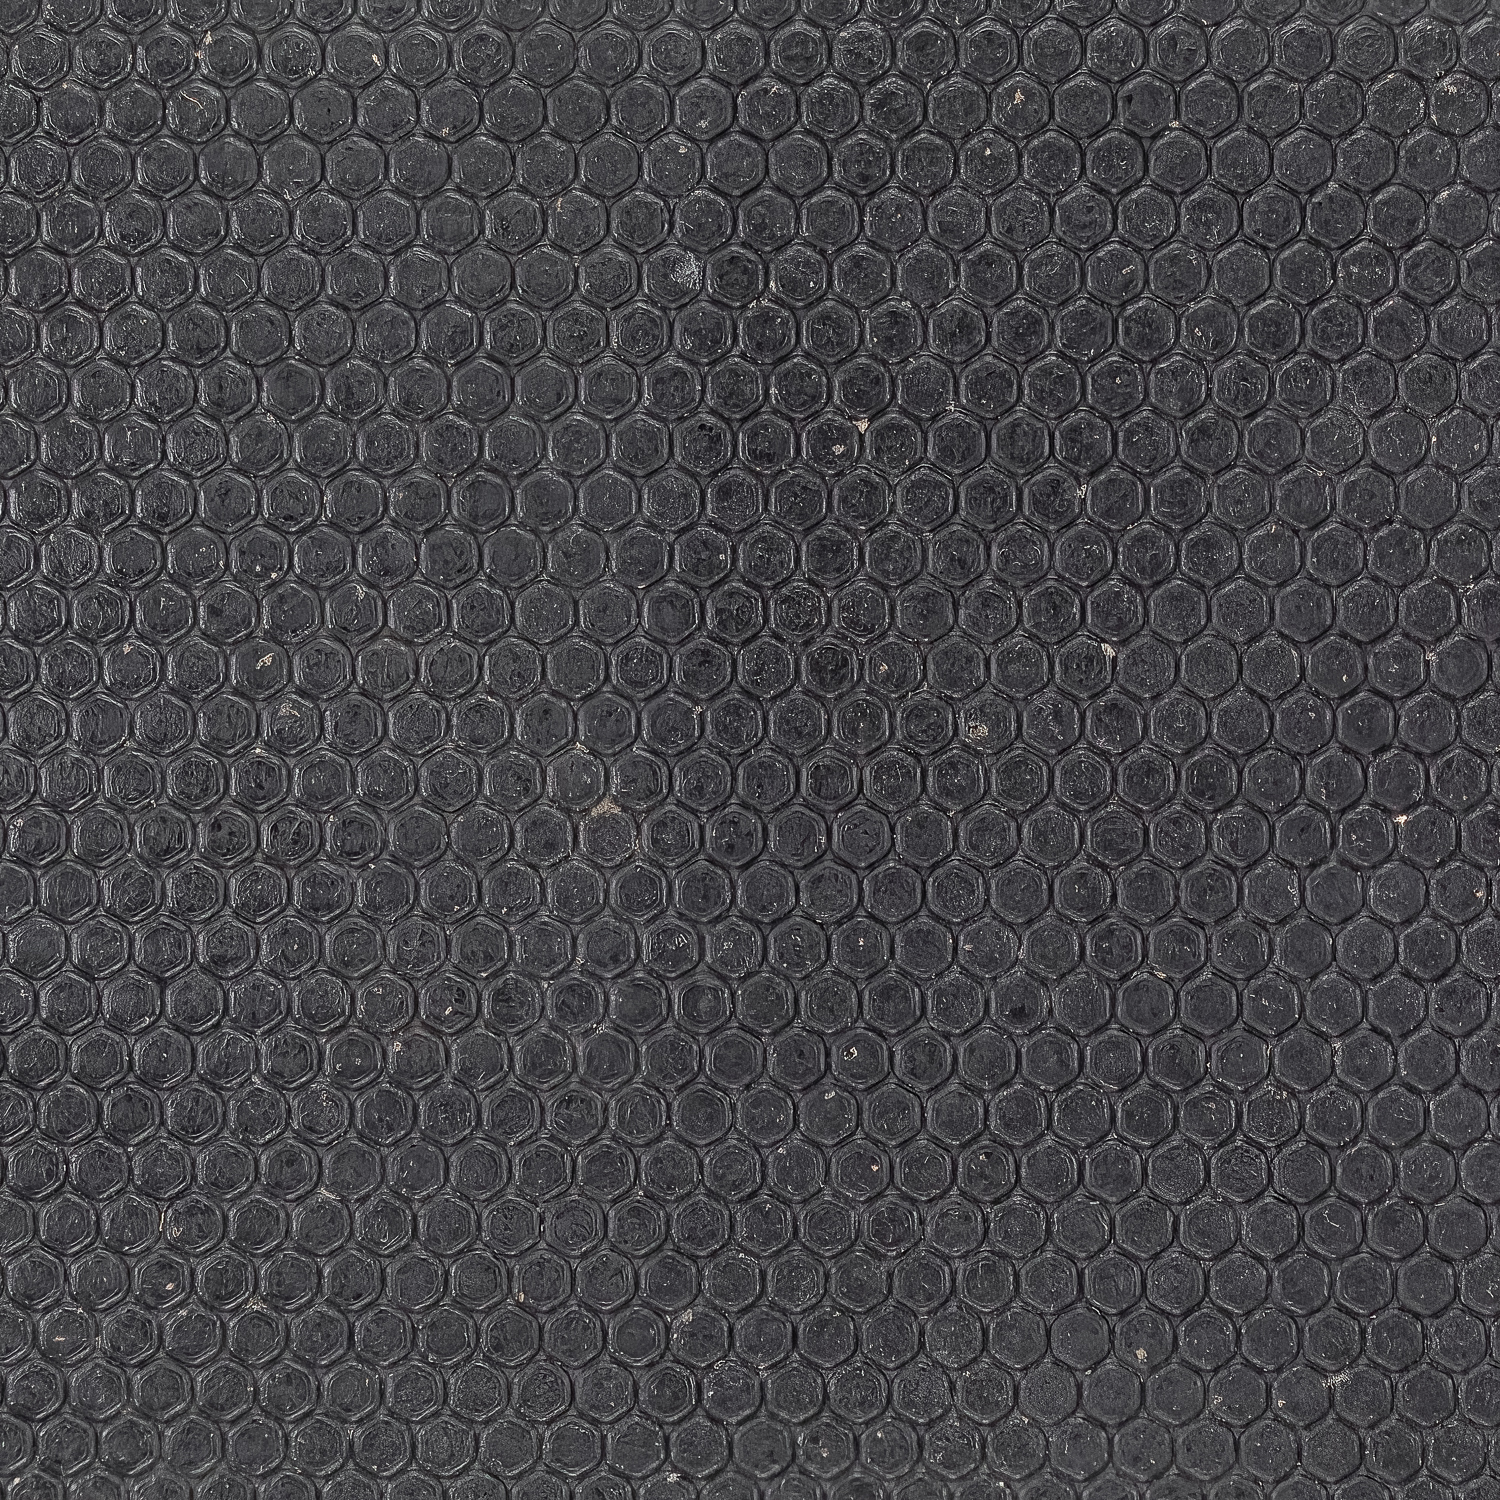 4 Pcs Black Leather Repair Patches 10x12 - Black